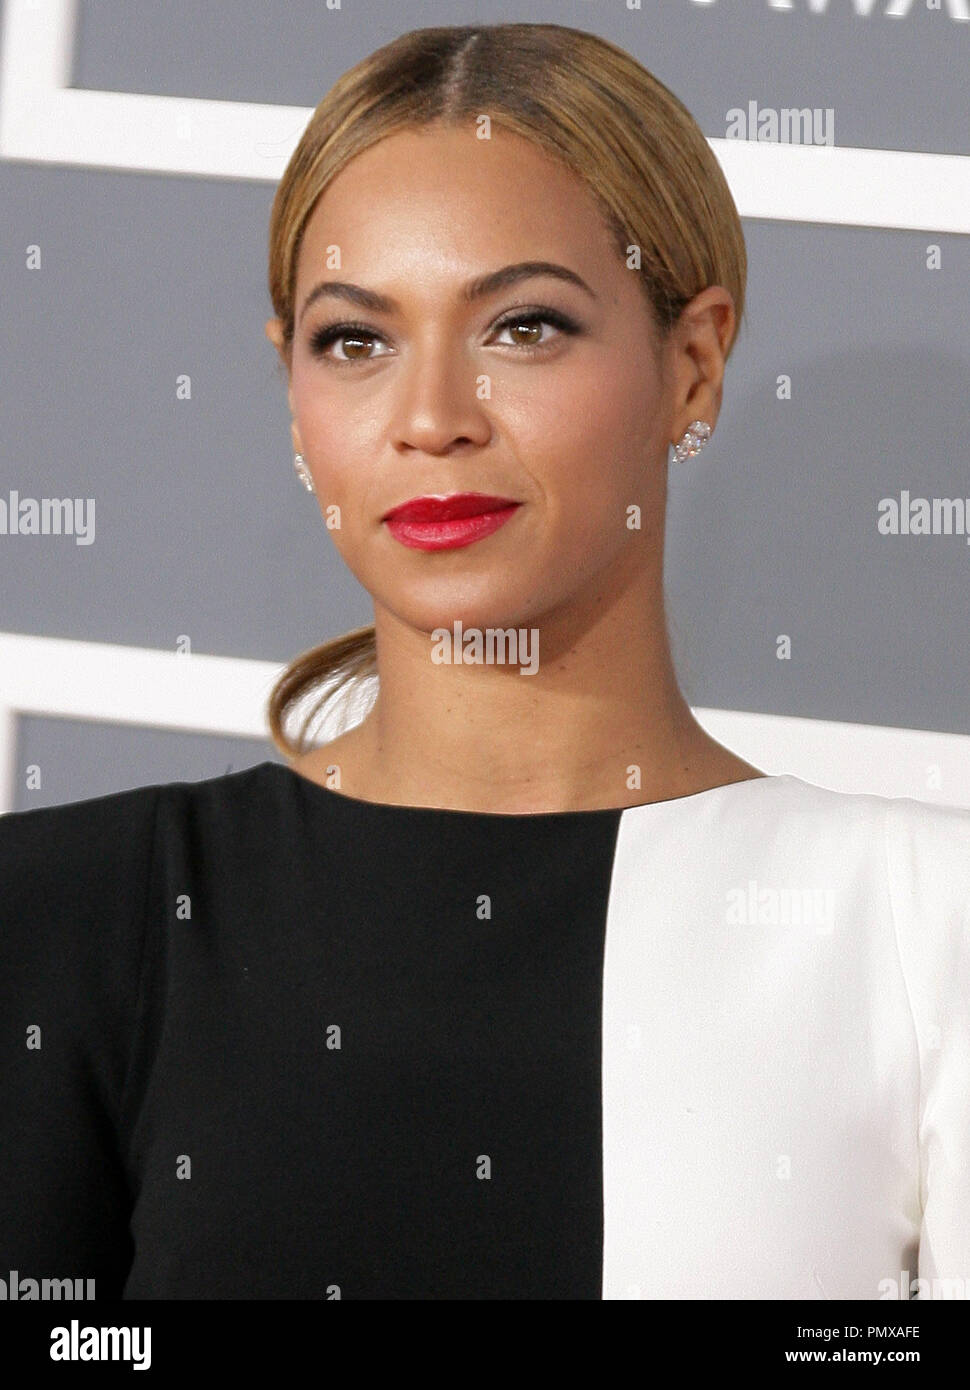 Beyonce auf der 55. jährlichen Grammy Awards im Staples Center in Los Angeles, CA. Die Veranstaltung fand am Sonntag, 10. Februar 2013. Foto von PRPP/PictureLux Datei Referenz # 31836 023 PRPP nur für redaktionelle Verwendung - Alle Rechte vorbehalten Stockfoto